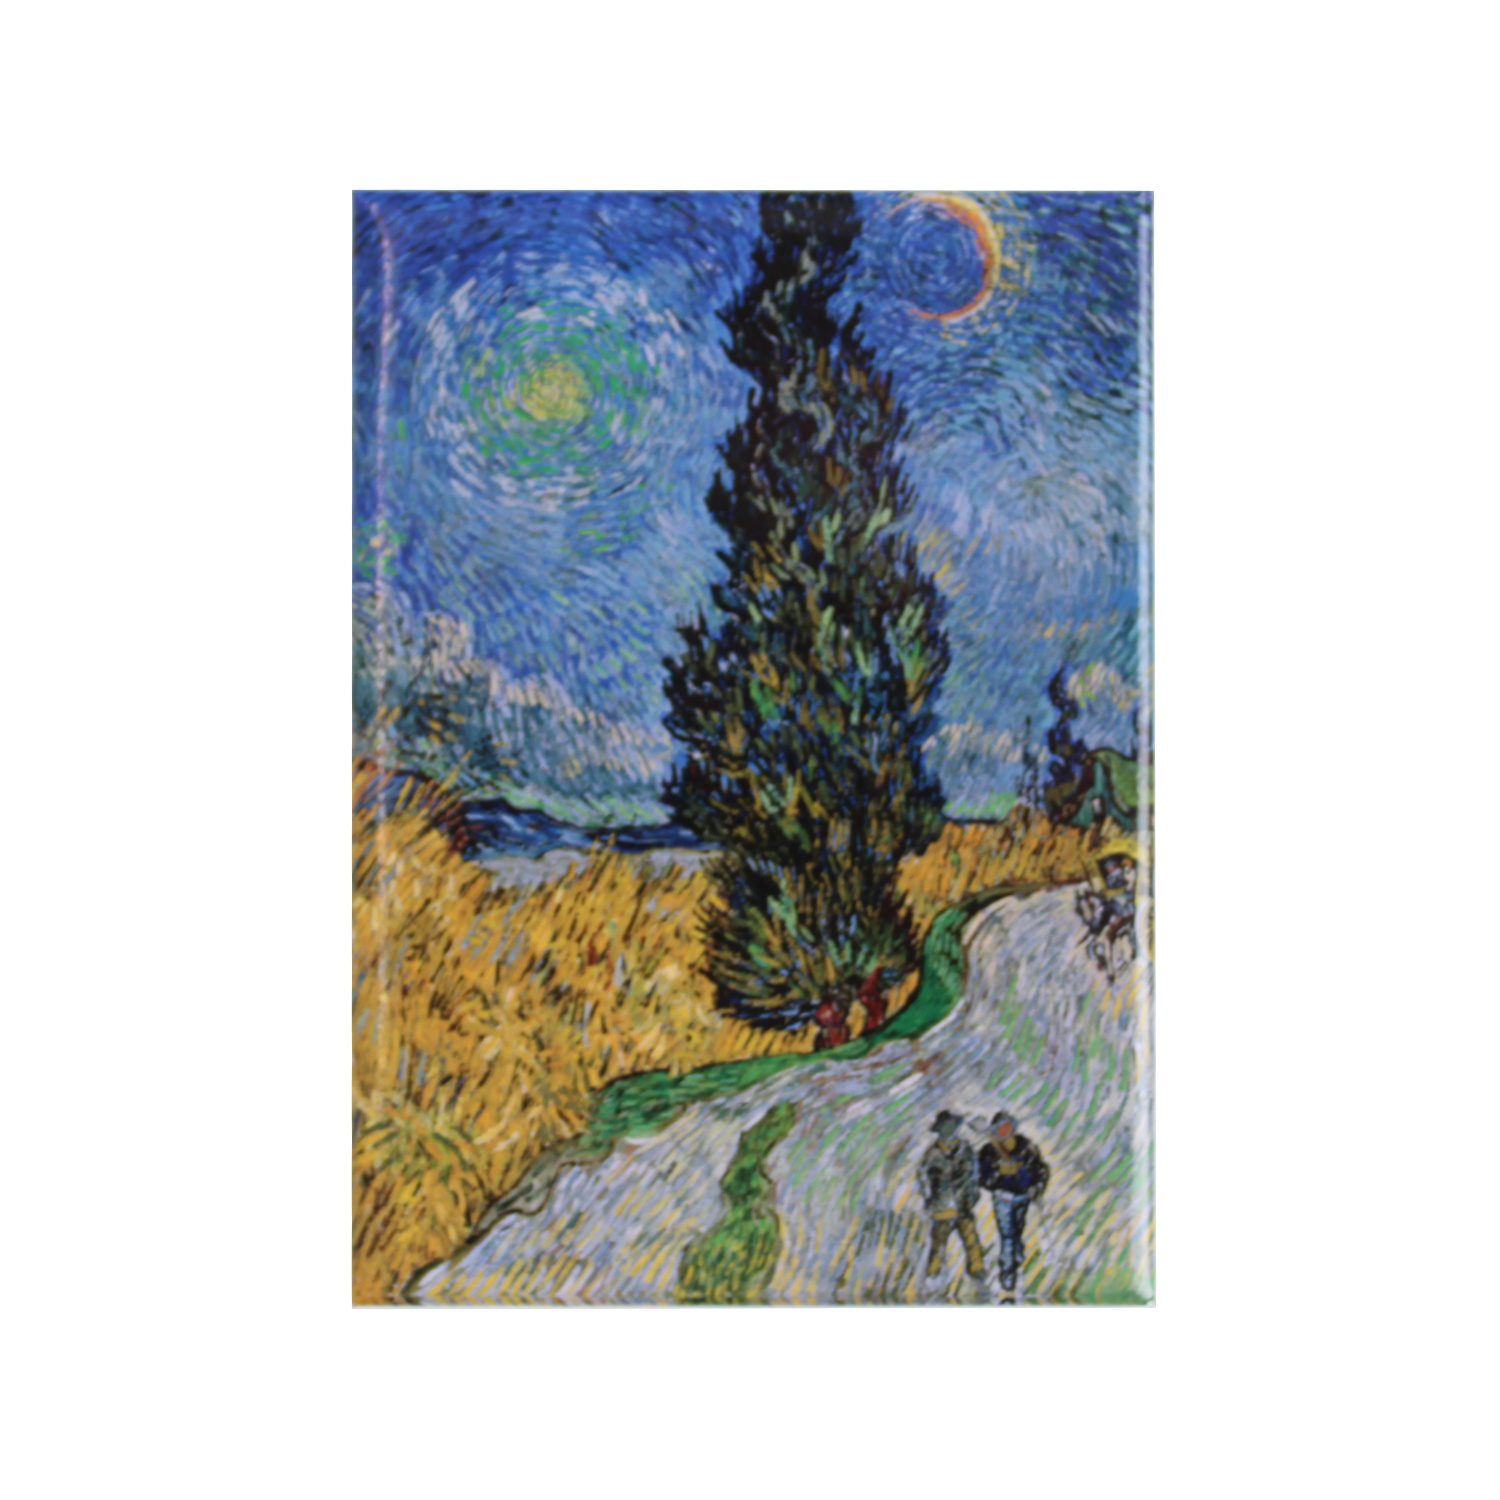 Koelkast magneet Van Gogh Landweg in de Provence bij nacht